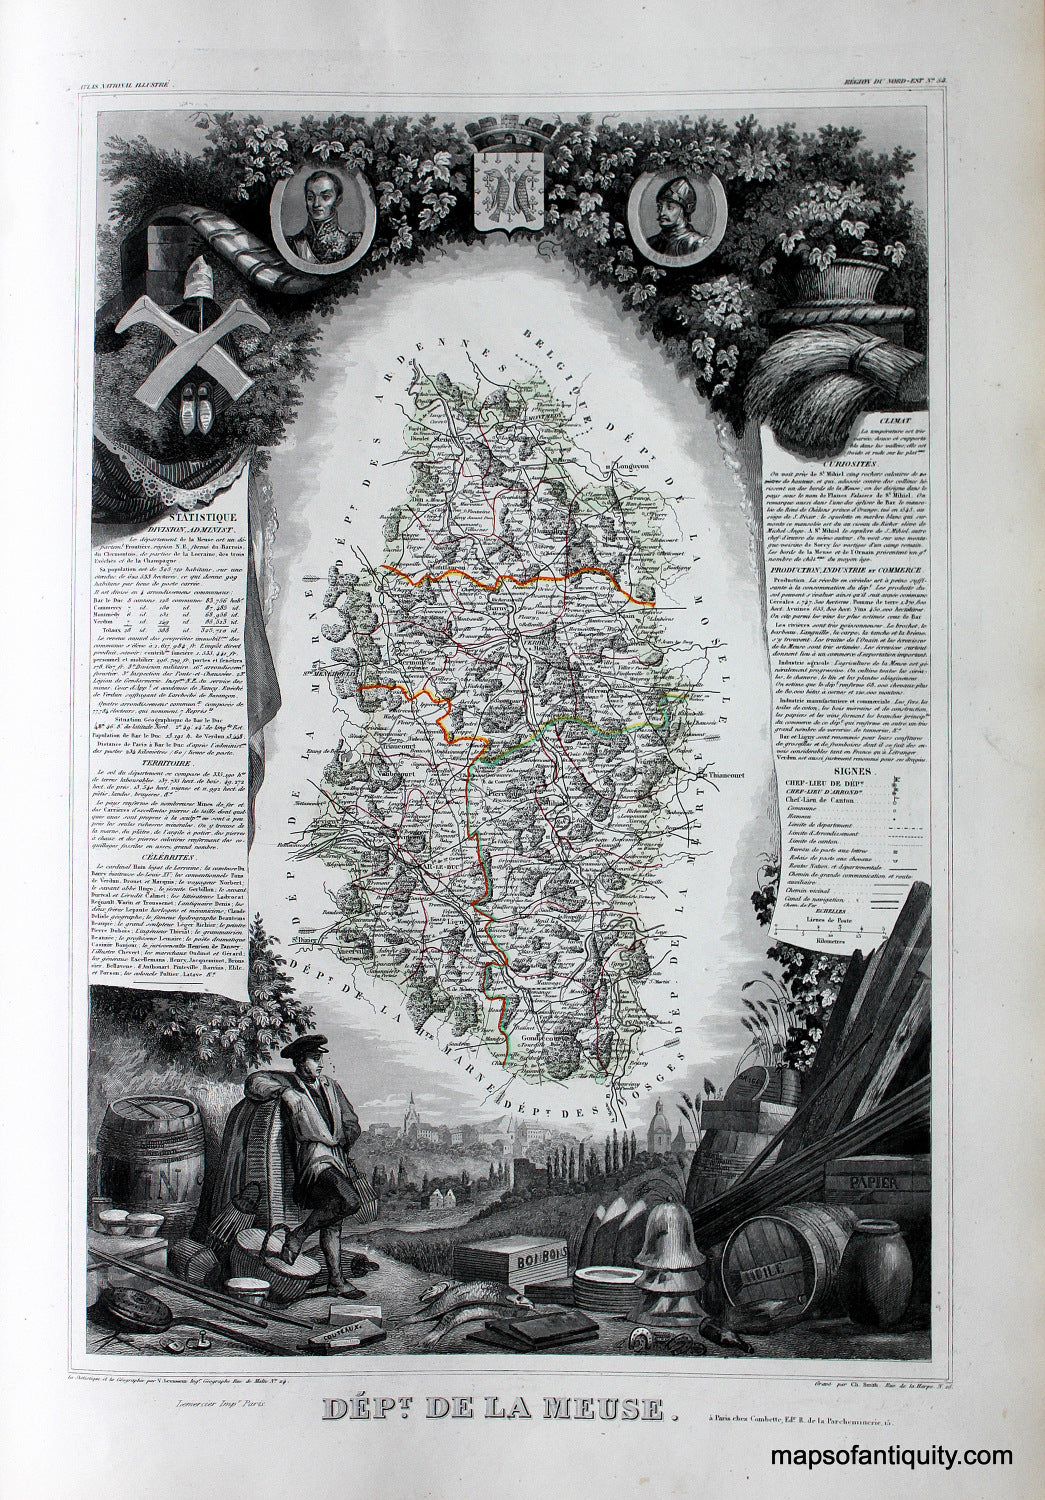 Antique-Hand-Colored-Map-Dept.-de-la-Meuse.-Europe-France-1851-Levasseur-Maps-Of-Antiquity